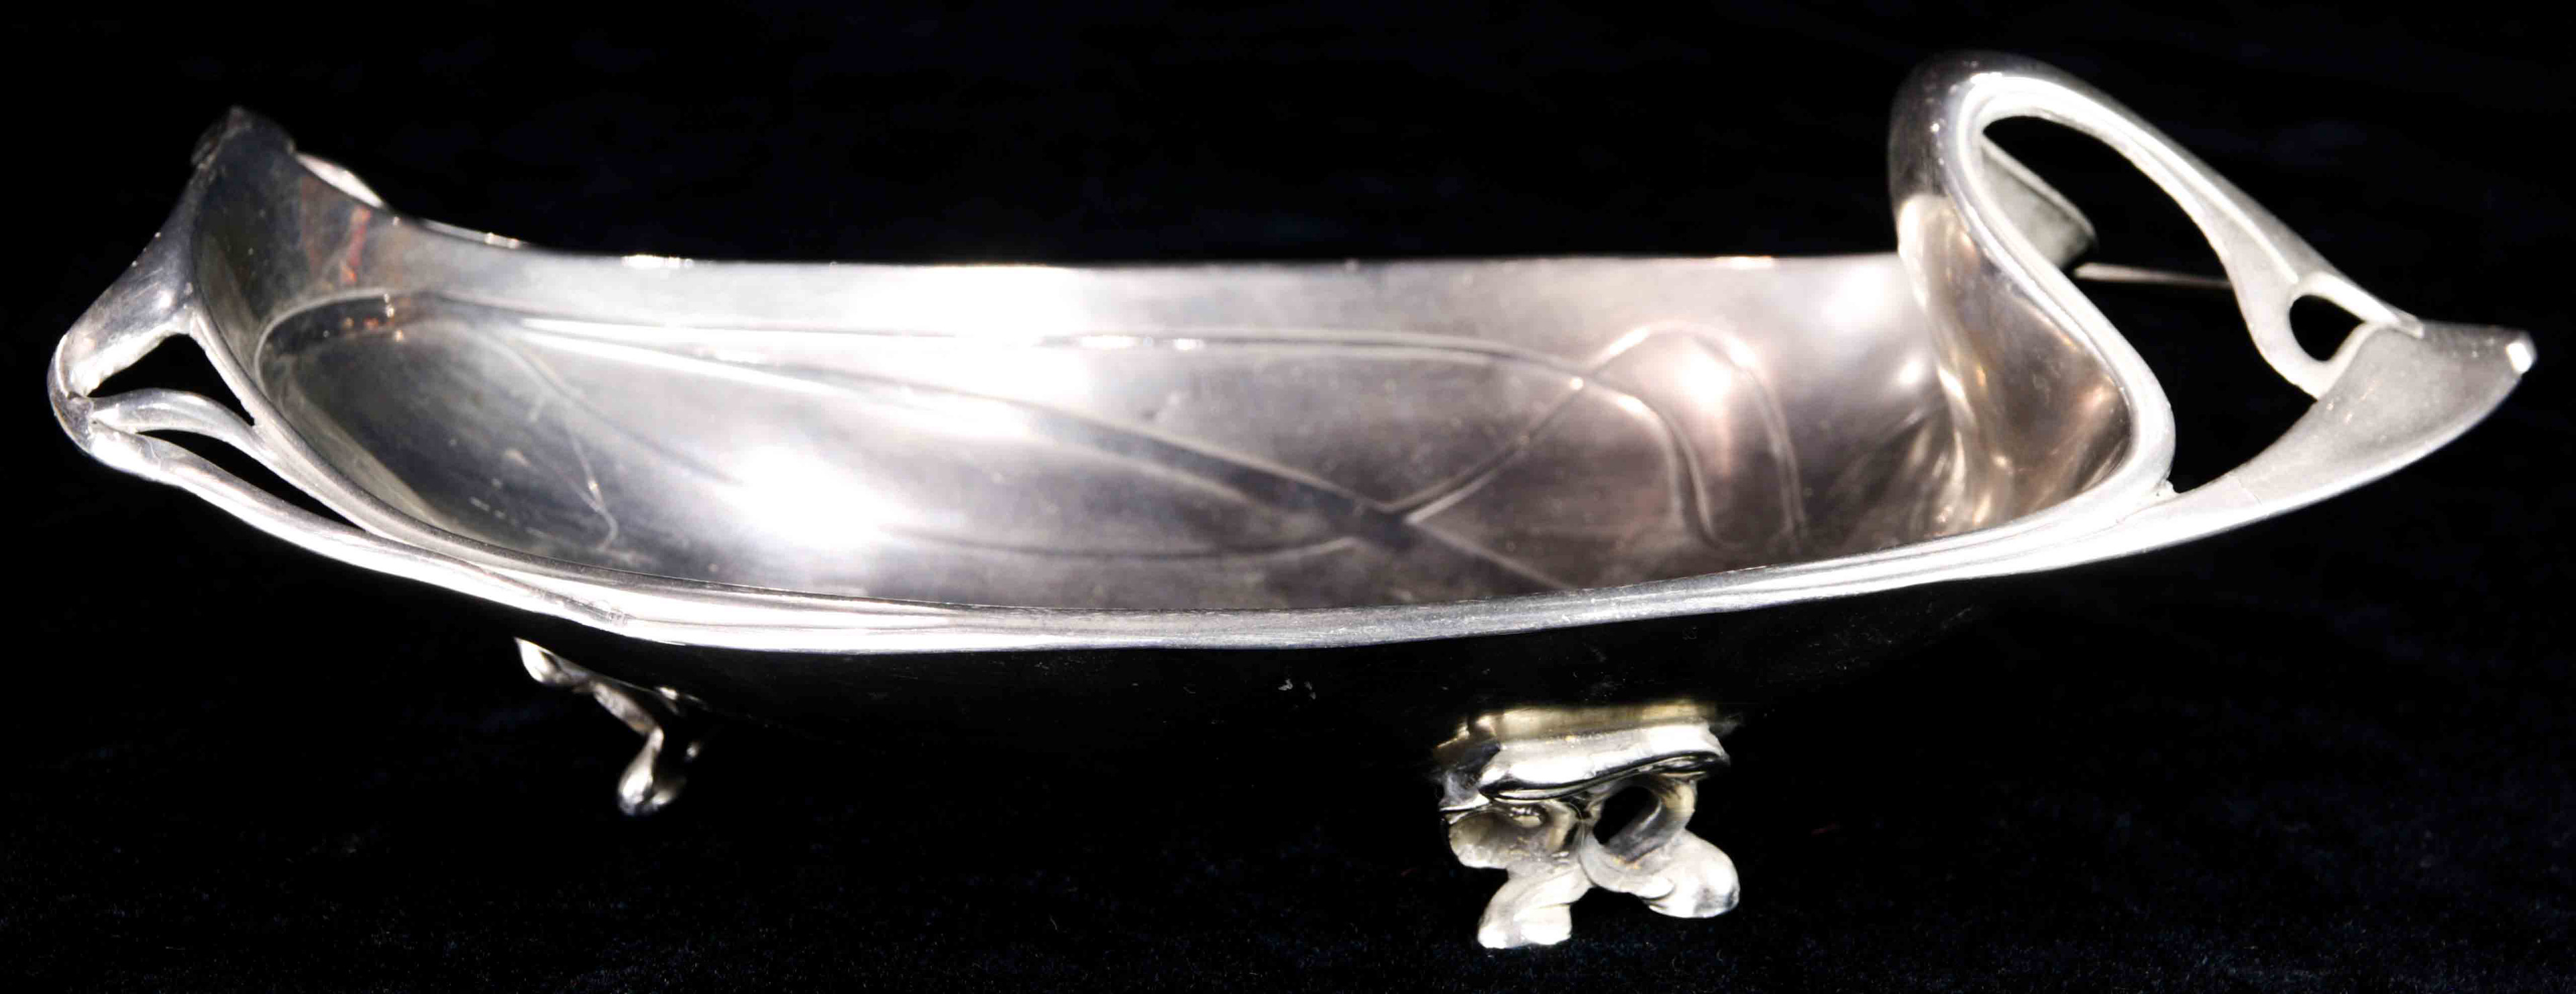 Jugendstil silver plate bowl - Image 3 of 6